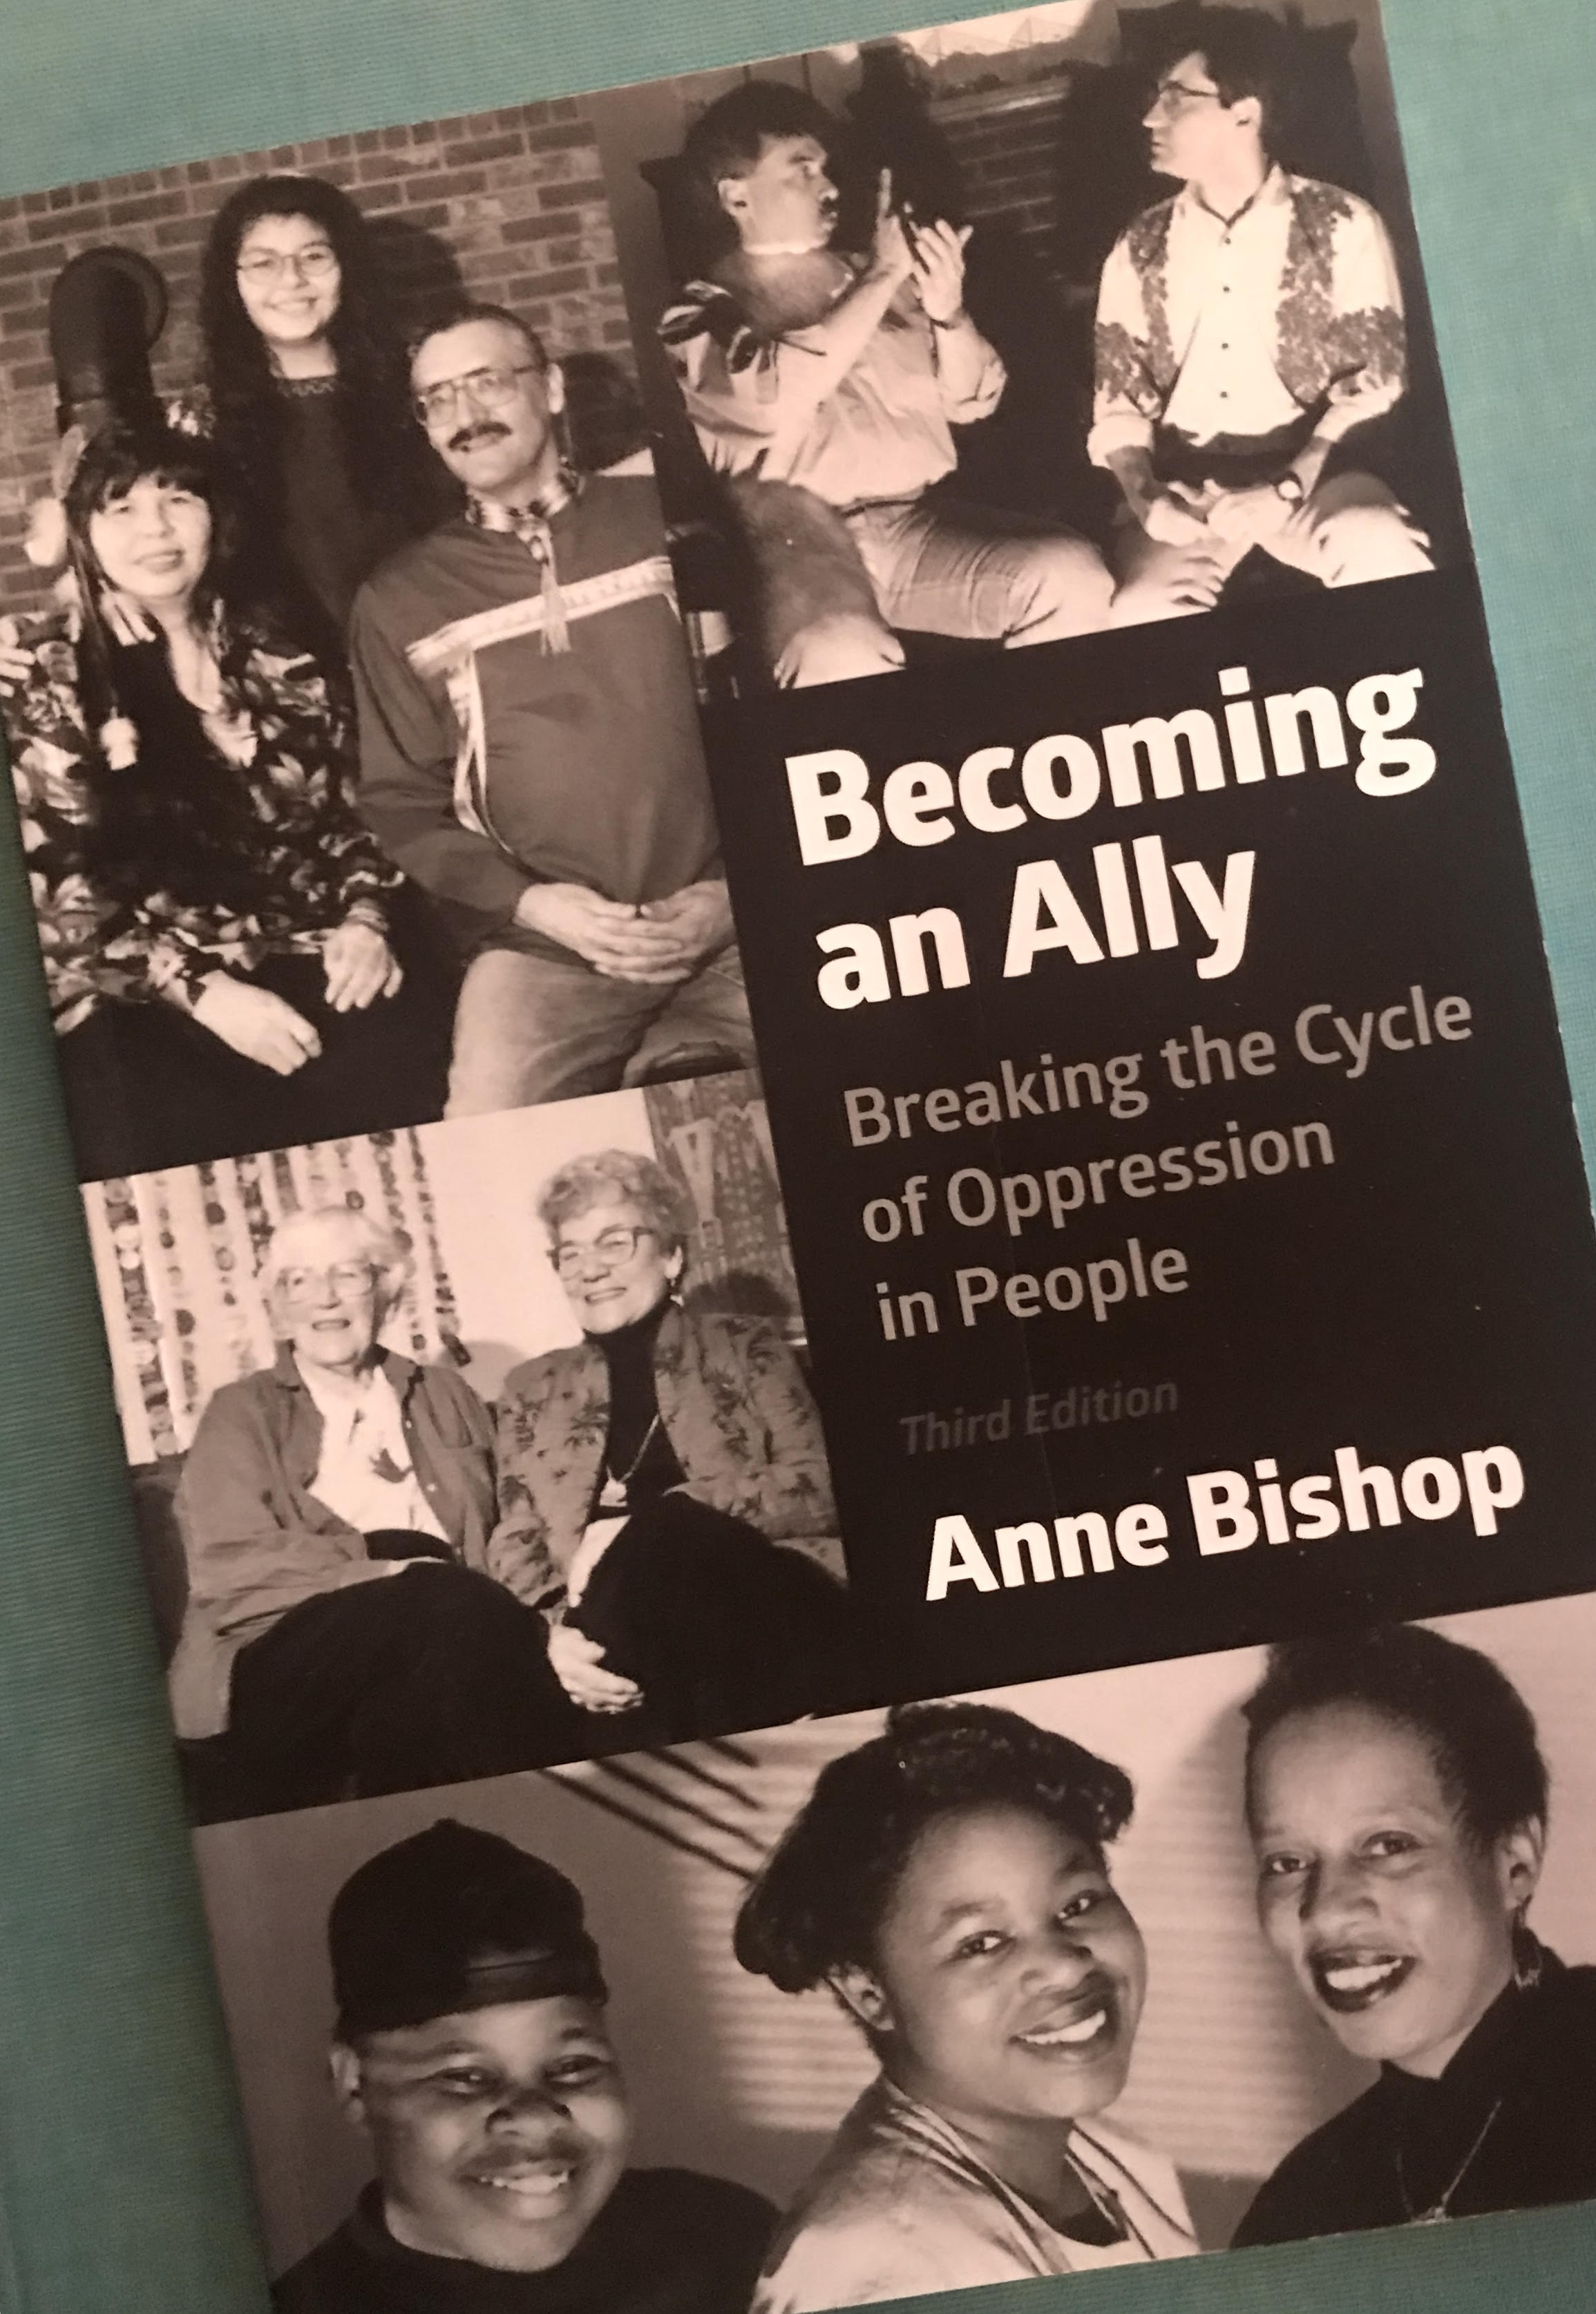 Foto av bokens framsida, formgiven med svartvita fotografier av människor. "Becoming an Ally Breaking the Cycle of Oppression in People Third Edition Anne Bishop